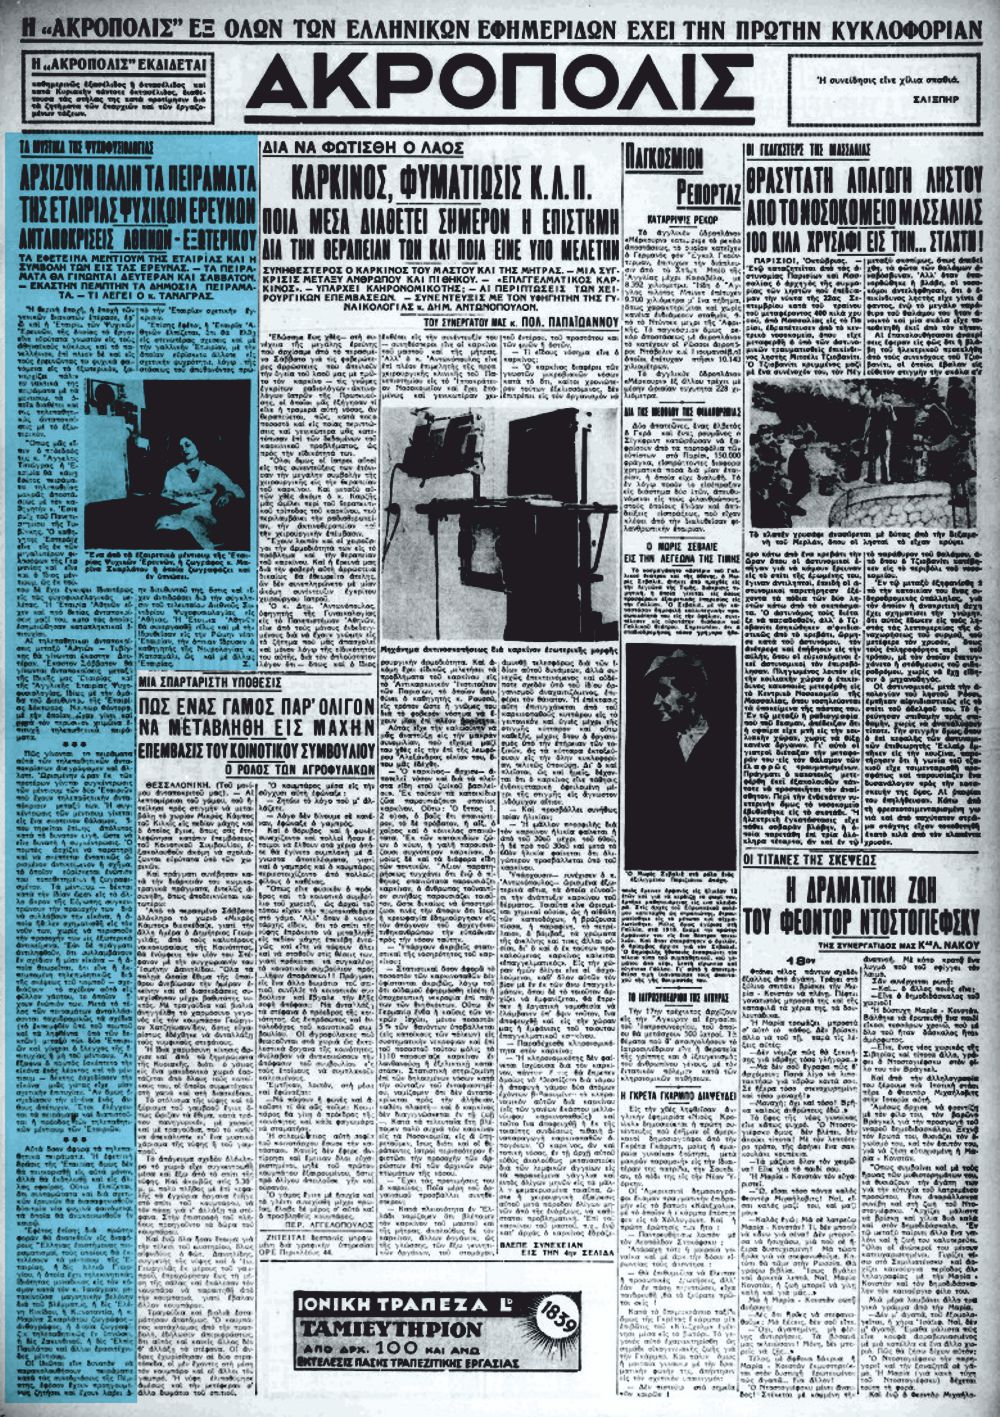 Το άρθρο, όπως δημοσιεύθηκε στην εφημερίδα "ΑΚΡΟΠΟΛΙΣ", στις 12/10/1938